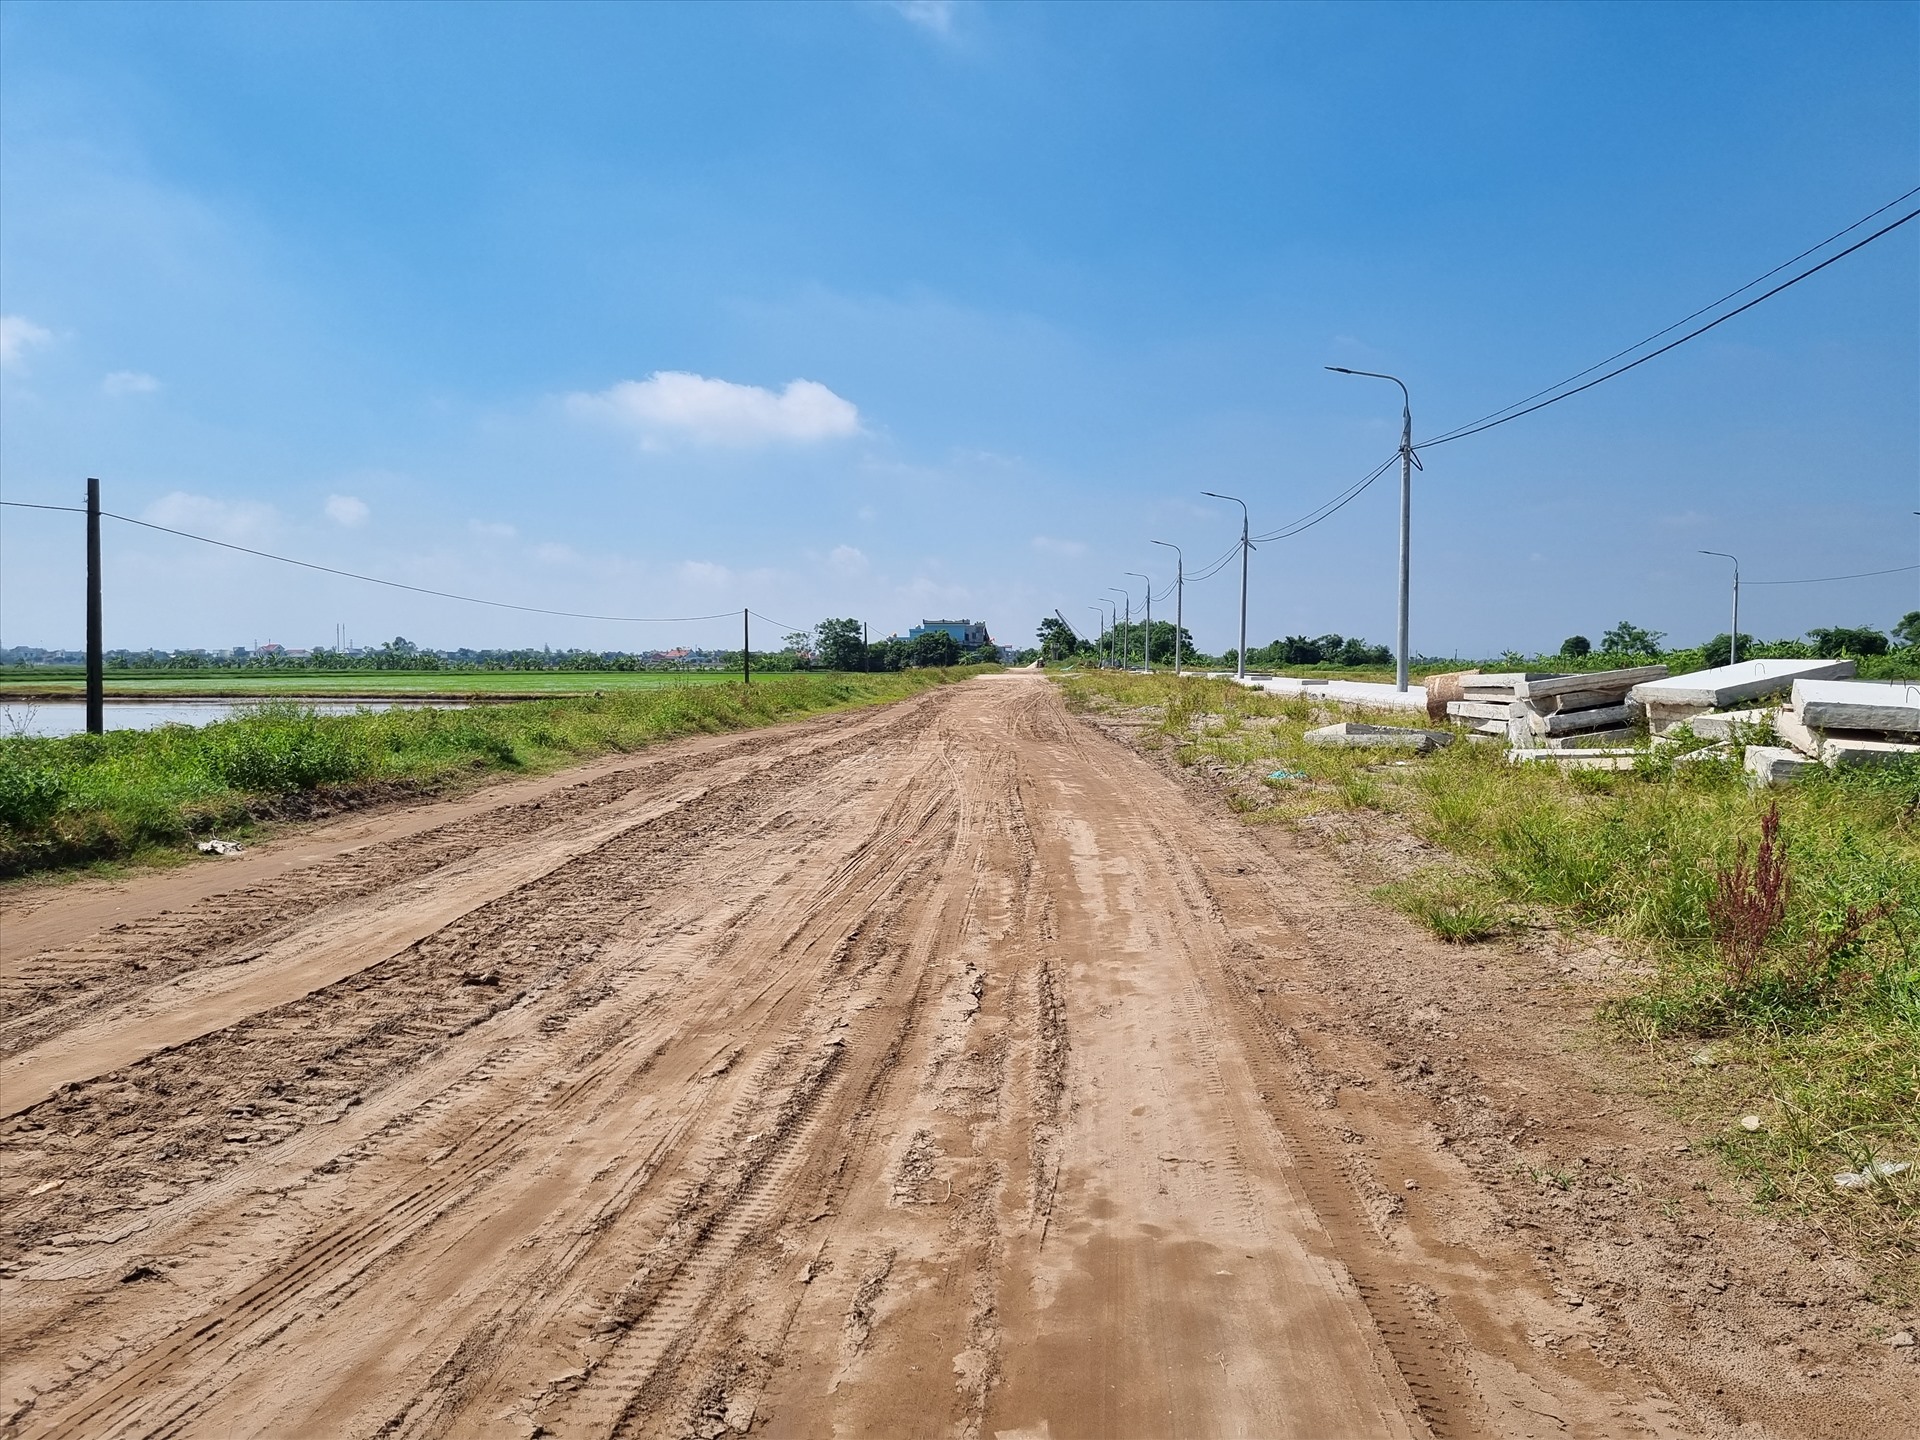 Theo thông tin từ chủ đầu tư dự án, đến nay giai đoạn 1 của dự án với chiều dài gần 3km đã hoàn thành, được bàn giao và đưa vào sử dụng năm 2014; giai đoạn 2 của dự án được triển khai từ năm 2017 với tổng chiều dài 8,9km, đã thi công phần nền mặt đường được 7,1km, còn lại khoảng 1,8km qua địa phận thôn Đông, xã Quang Bình; giai đoạn 3 của dự án gồm phần cầu qua sông Kiến Giang và đường dẫn lên cầu hiện chưa thực hiện đầu tư.